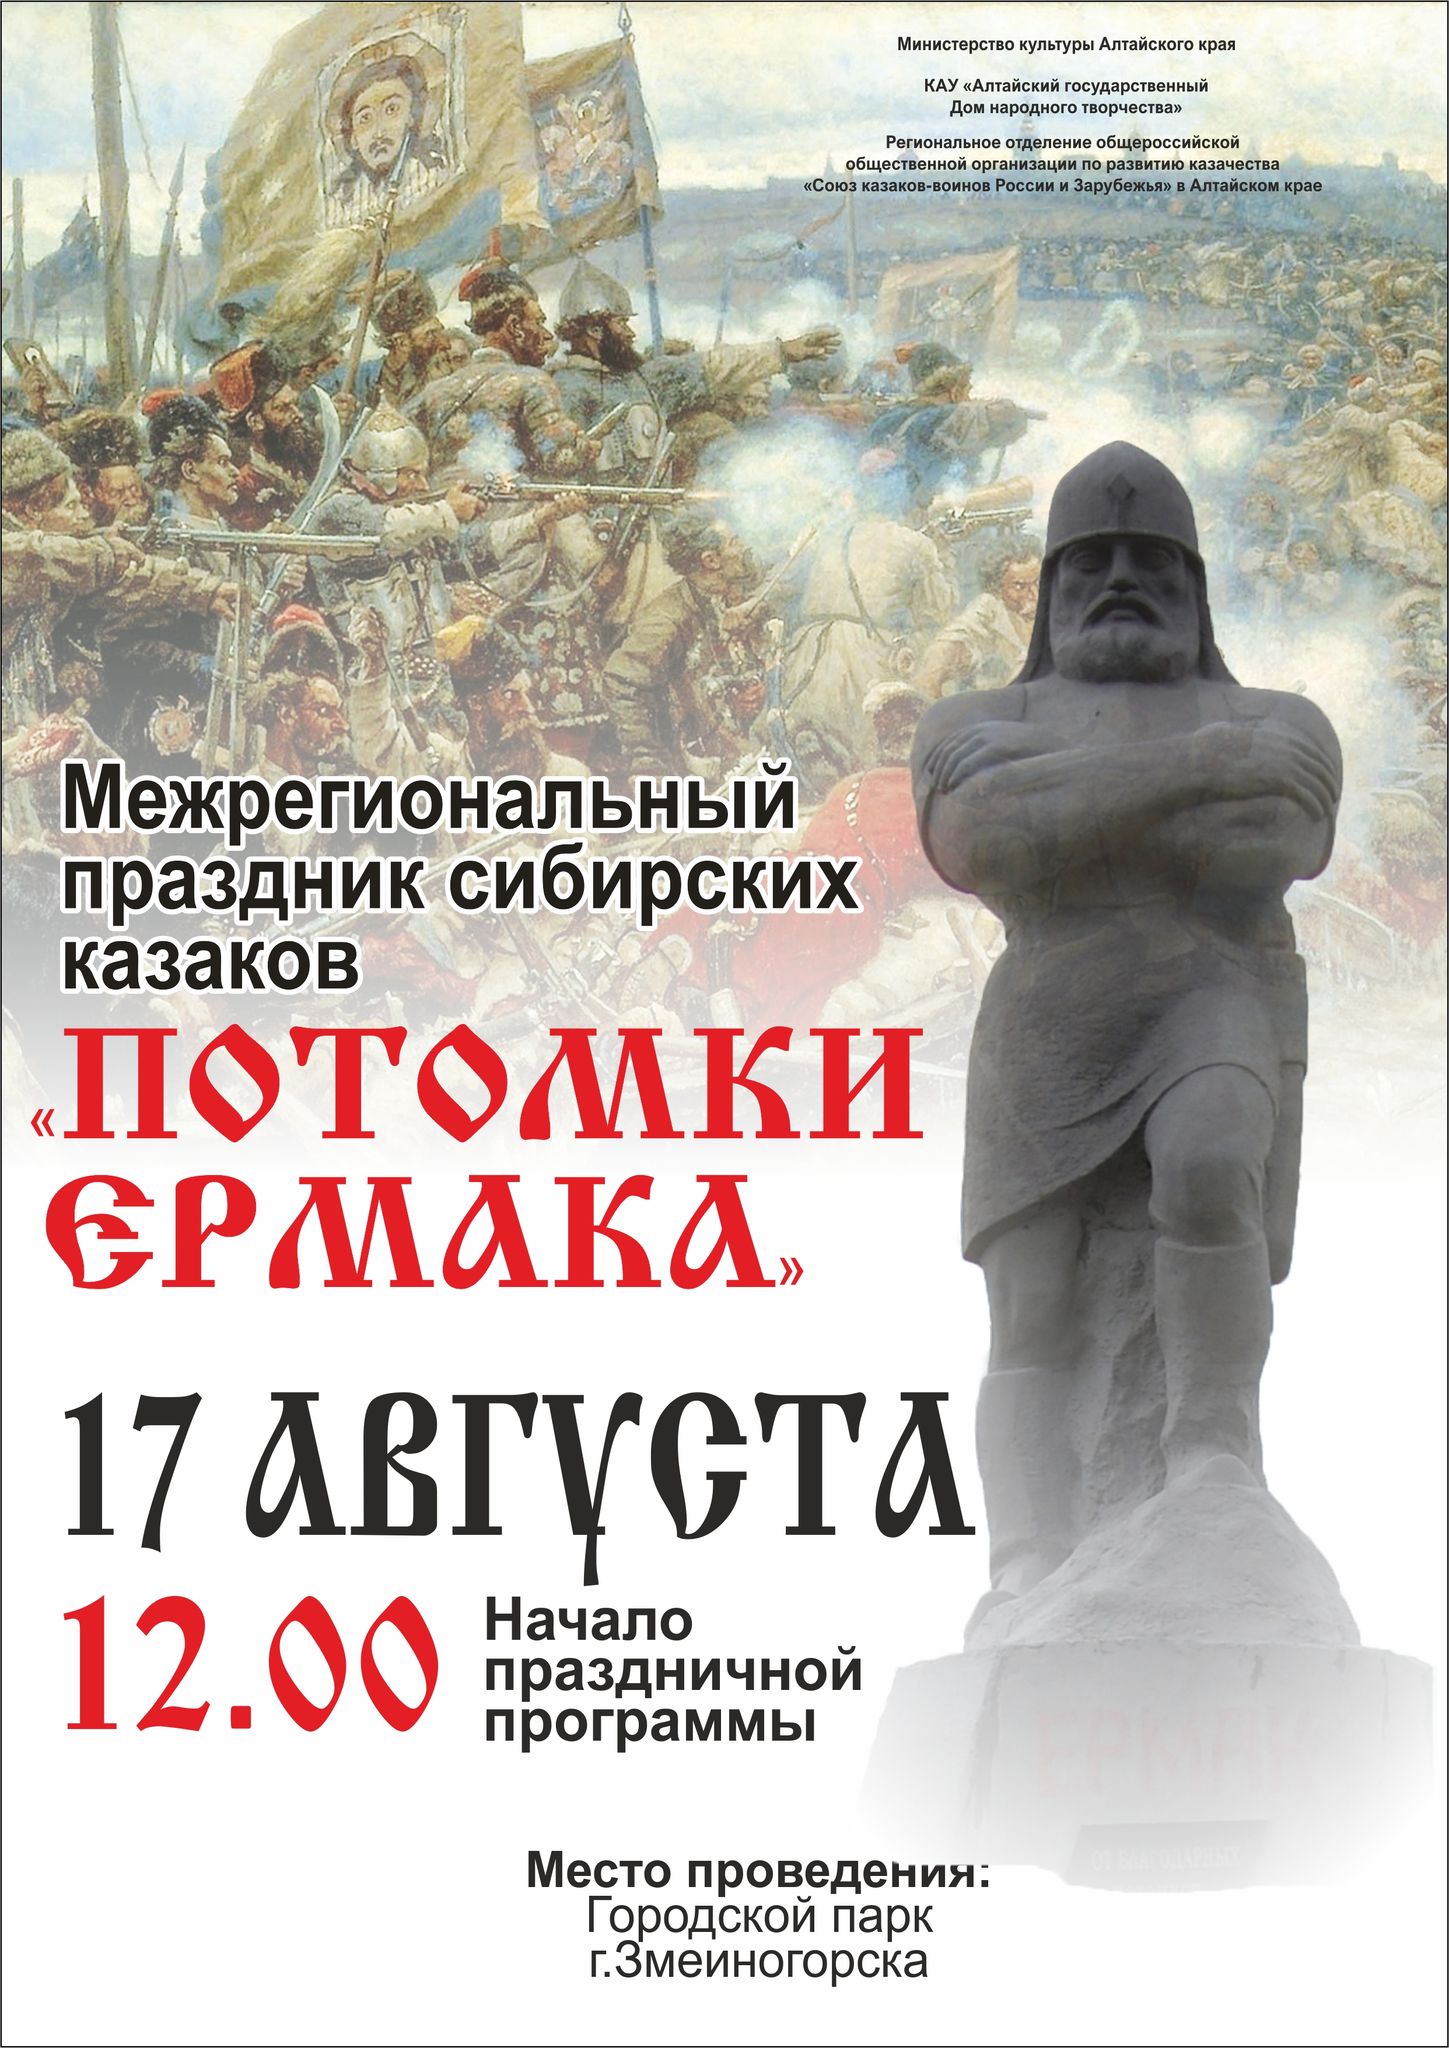 Открыт приём заявок на участие в Межрегиональном празднике сибирских казаков «Потомки Ермака»